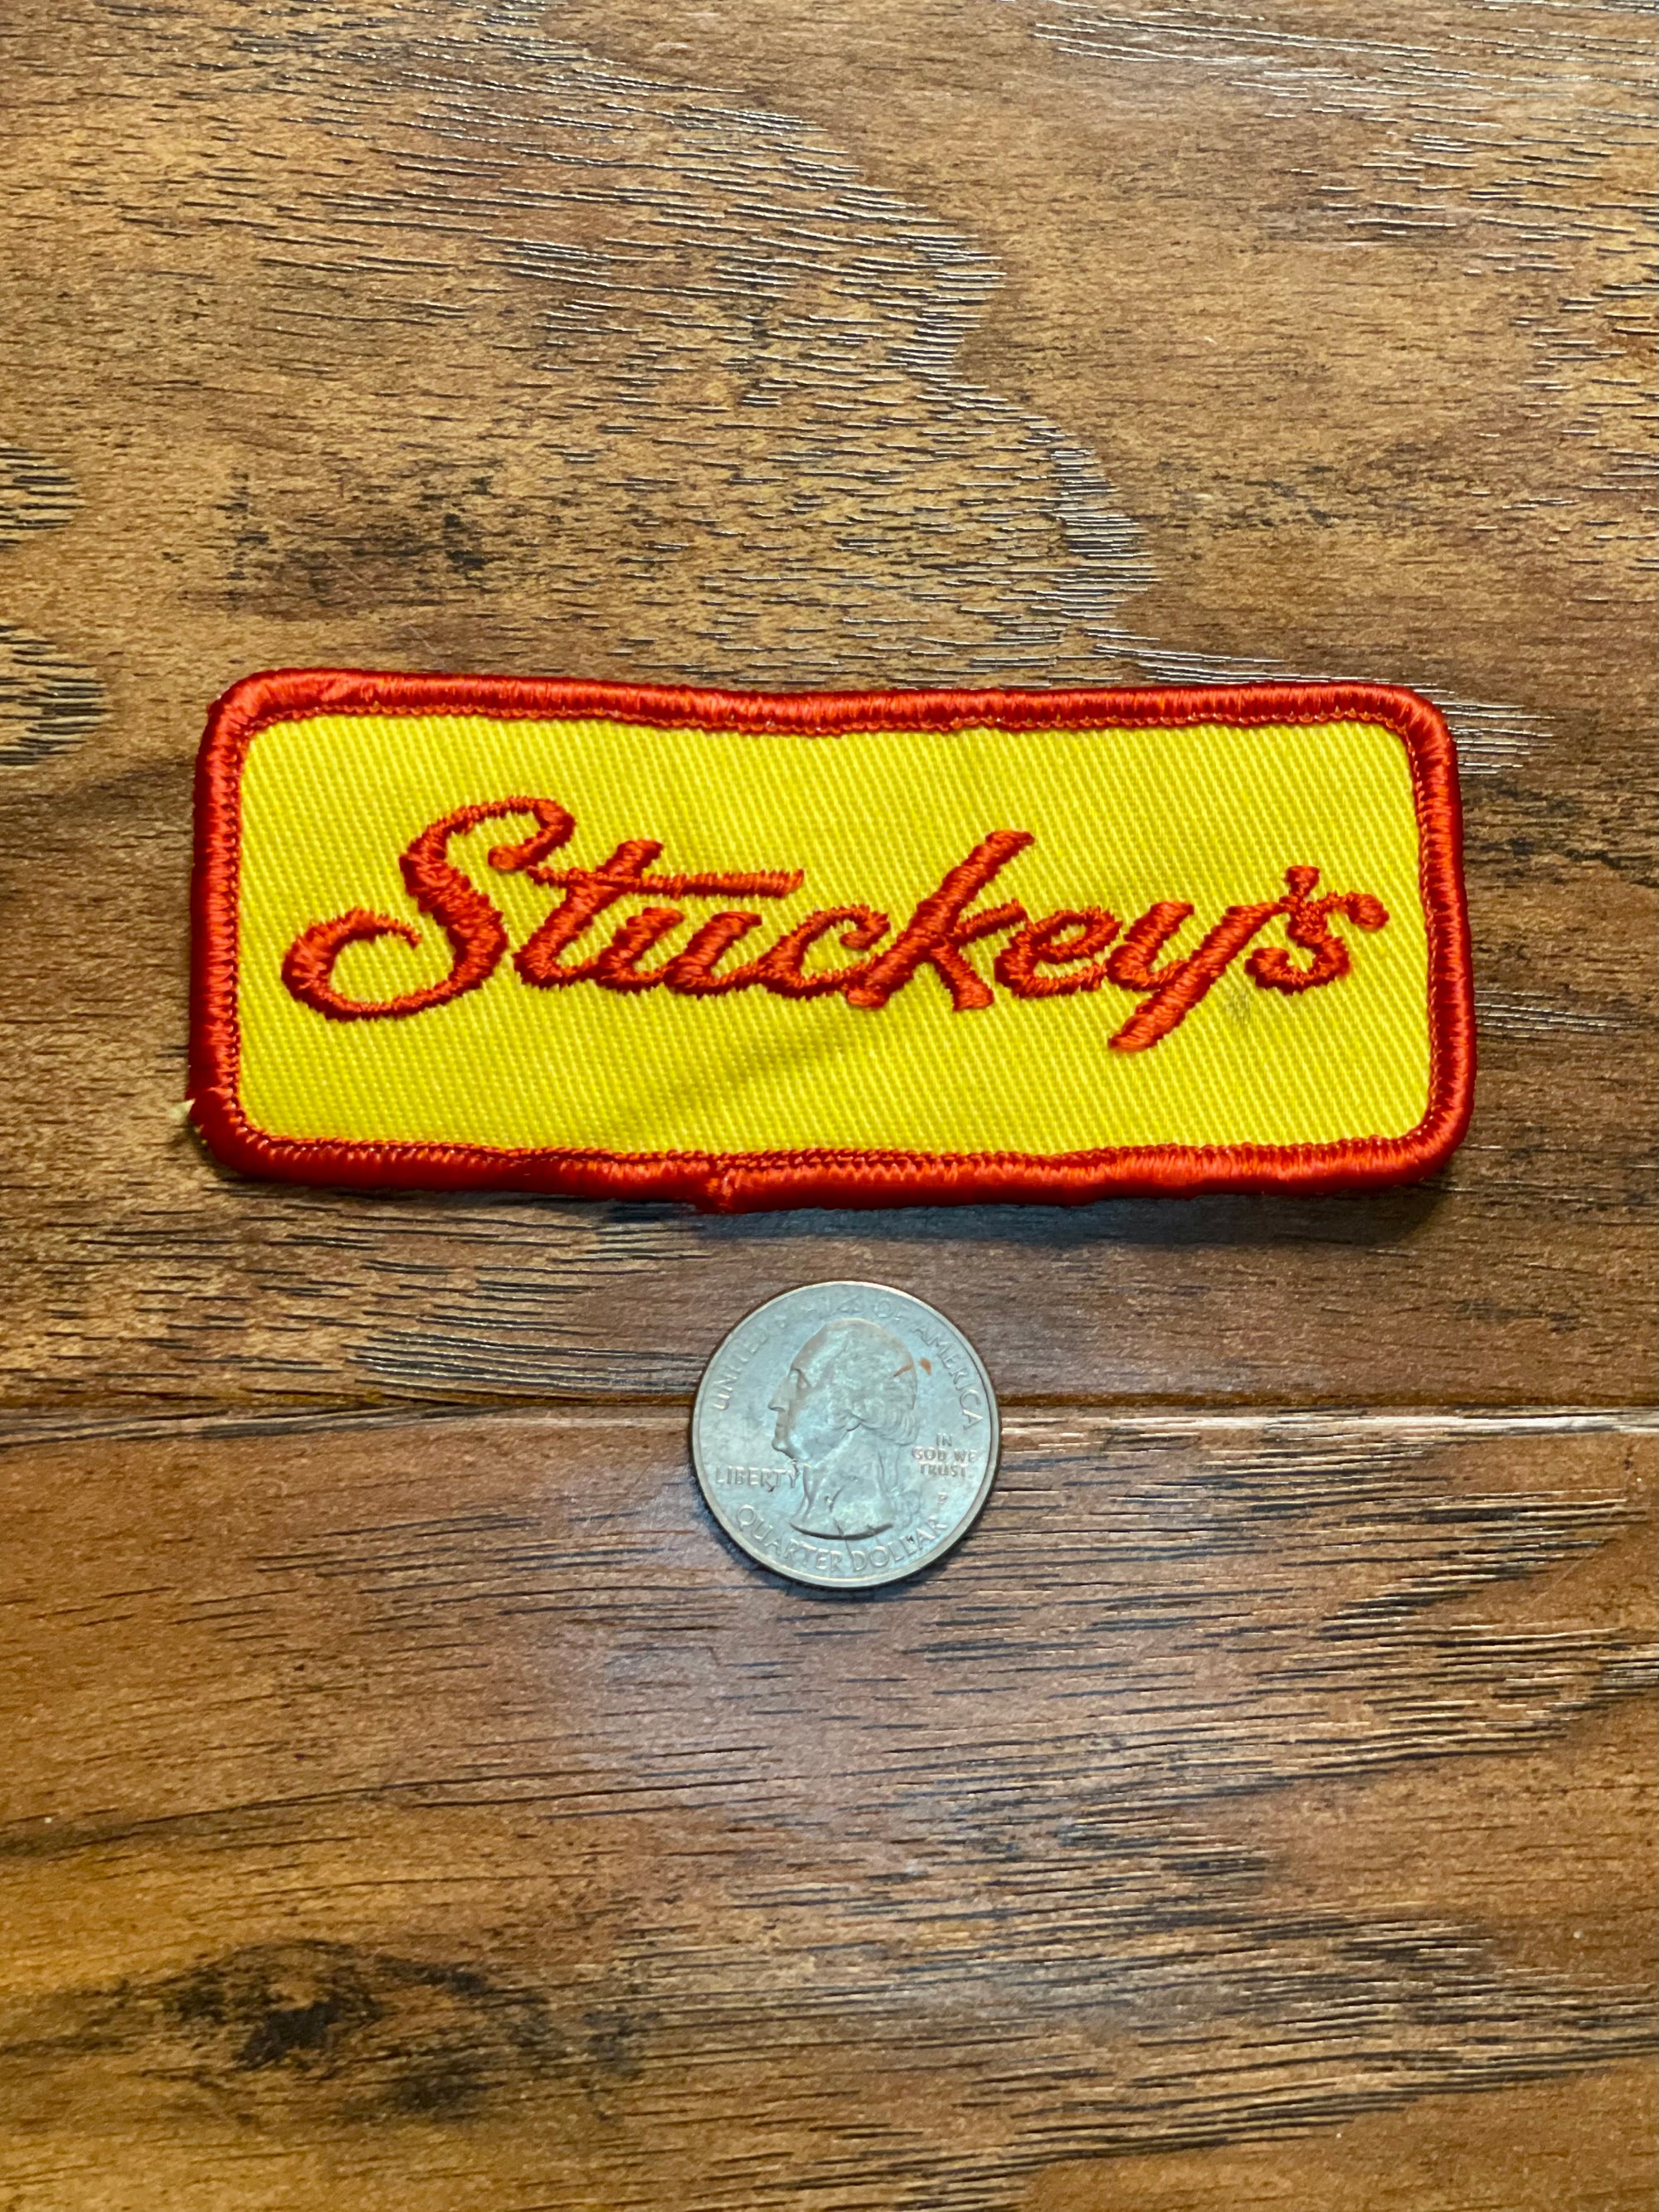 Vintage Stuckey’s